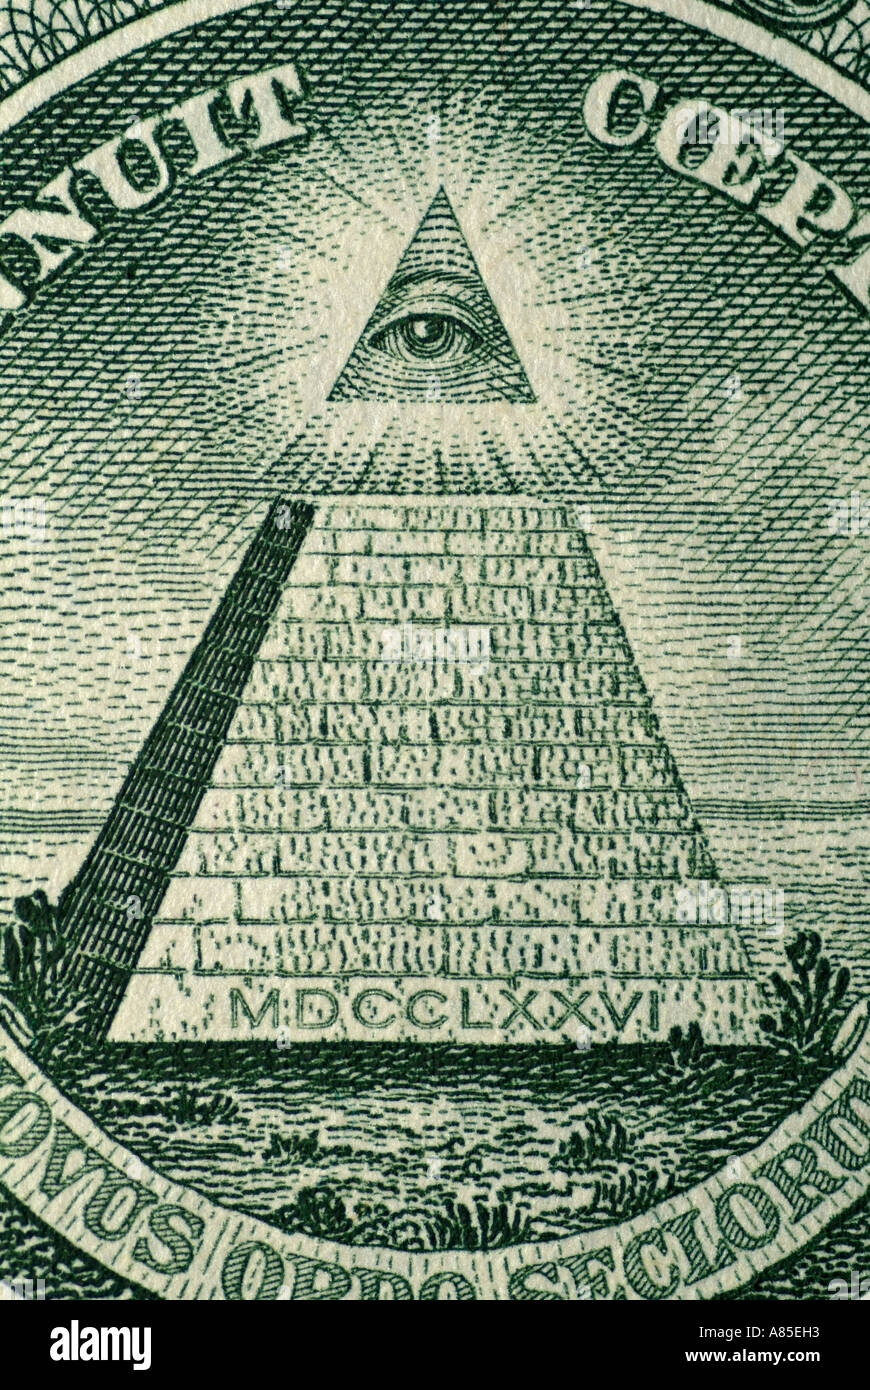 Résumé de l'arrière d'un Américain d'un Dollar US Remarque montrant une pyramide avec 13 étapes et un Œil dans l'Apex Banque D'Images